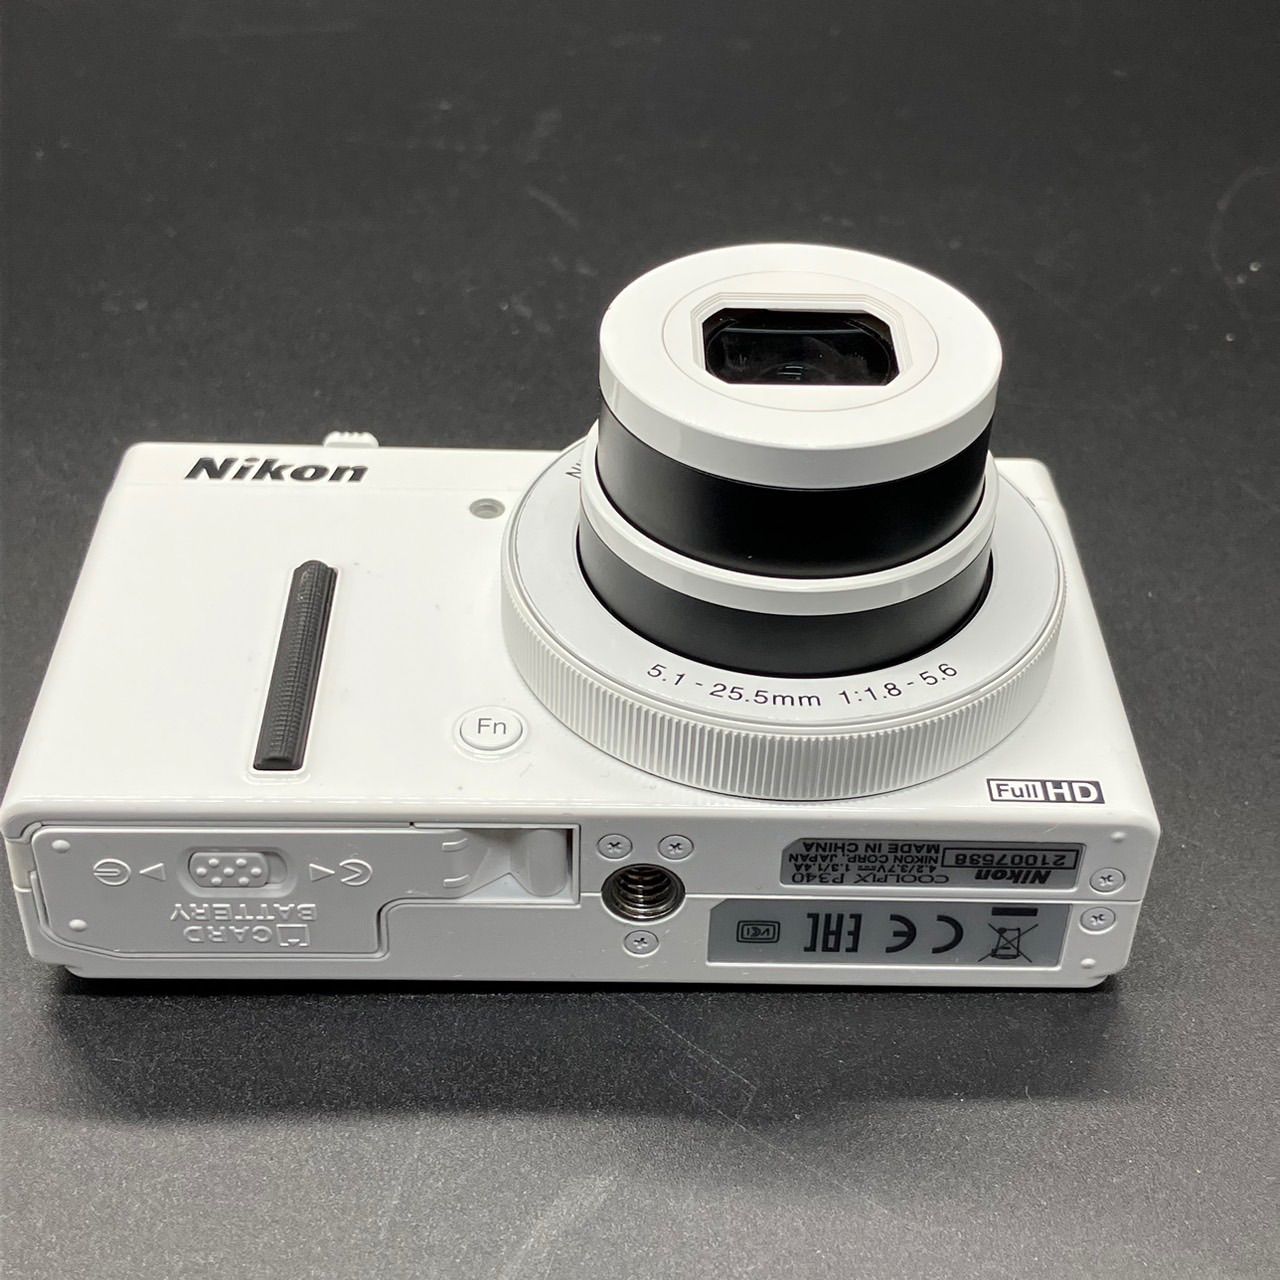 限定SALE正規品Nikon COOLPIX P340 【メモリーカード無し】 デジタルカメラ